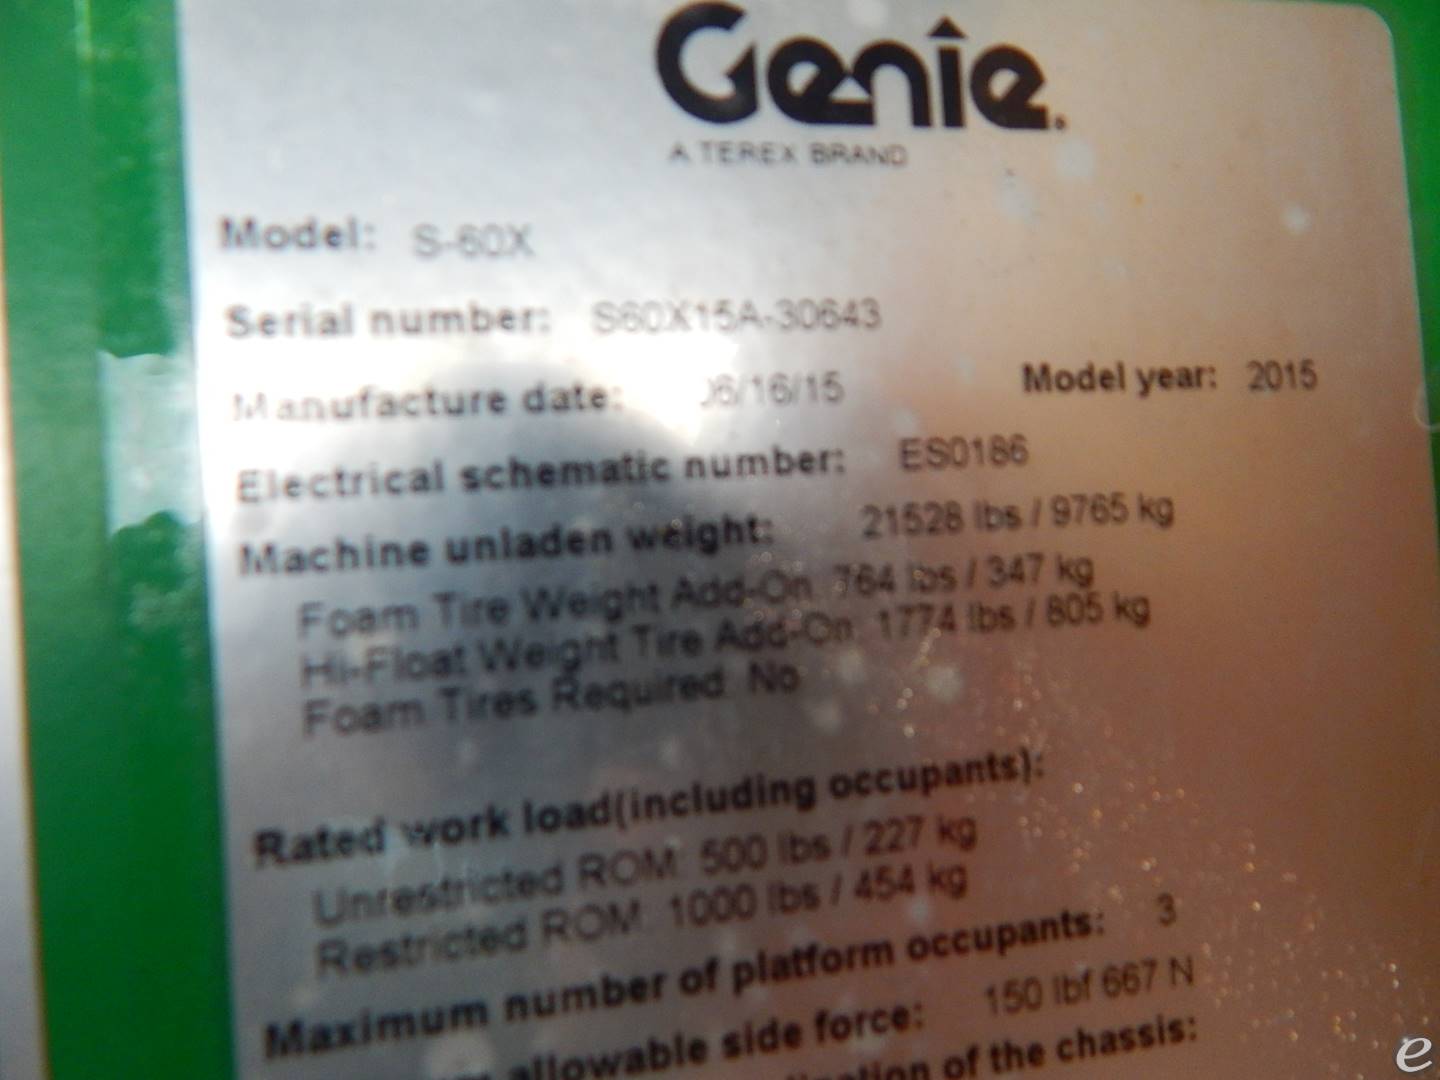 2015 Genie S60X